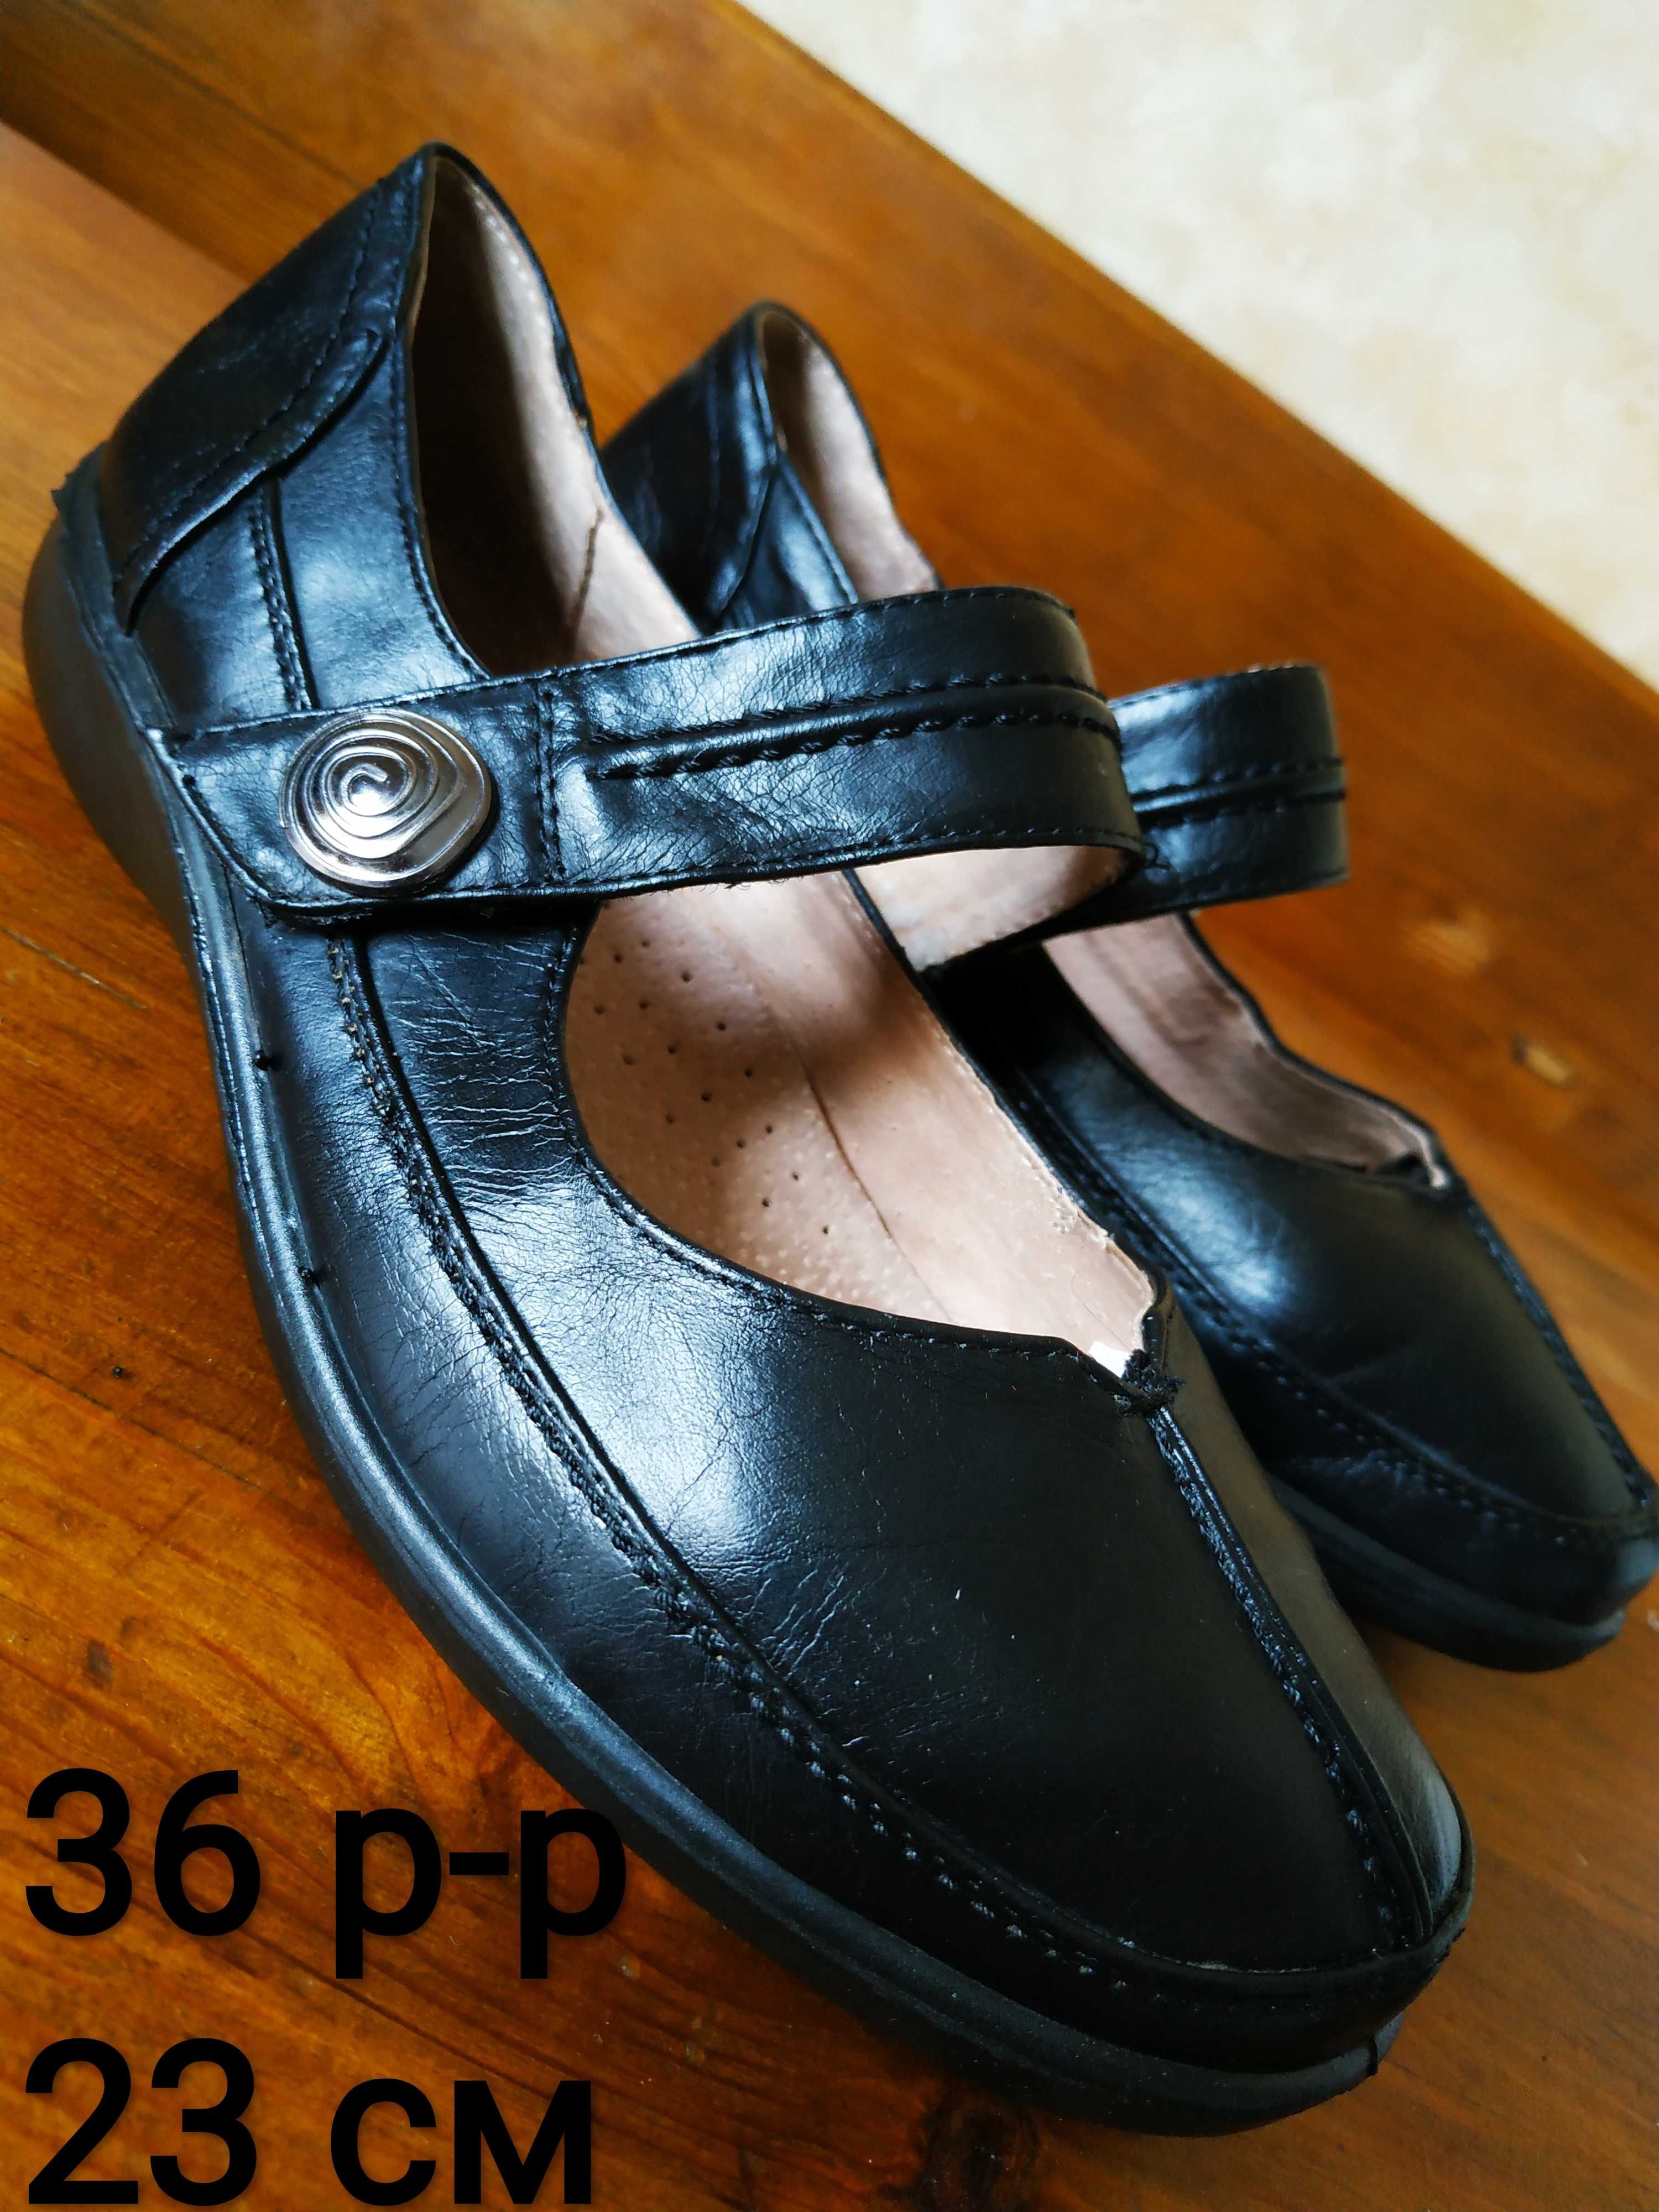 Школьные черные легкие кожаные туфли для девочки на ремешке 36 р 23 см